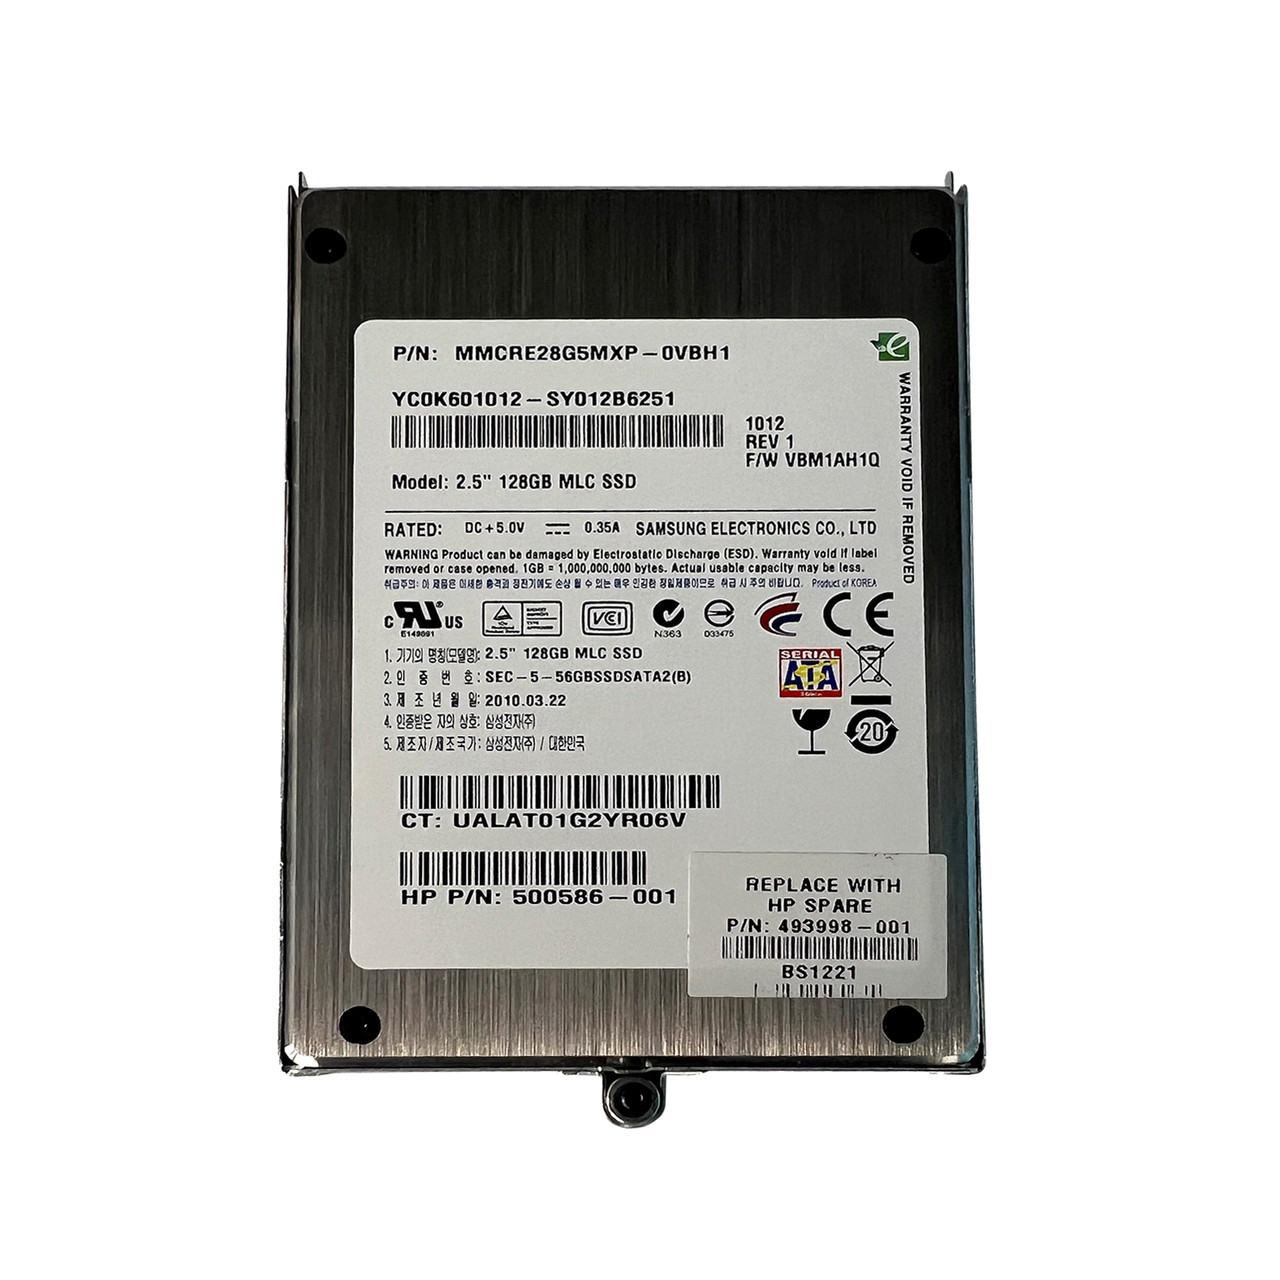 HP 493998-001 128GB SATA 2.5" SSD 500586-001